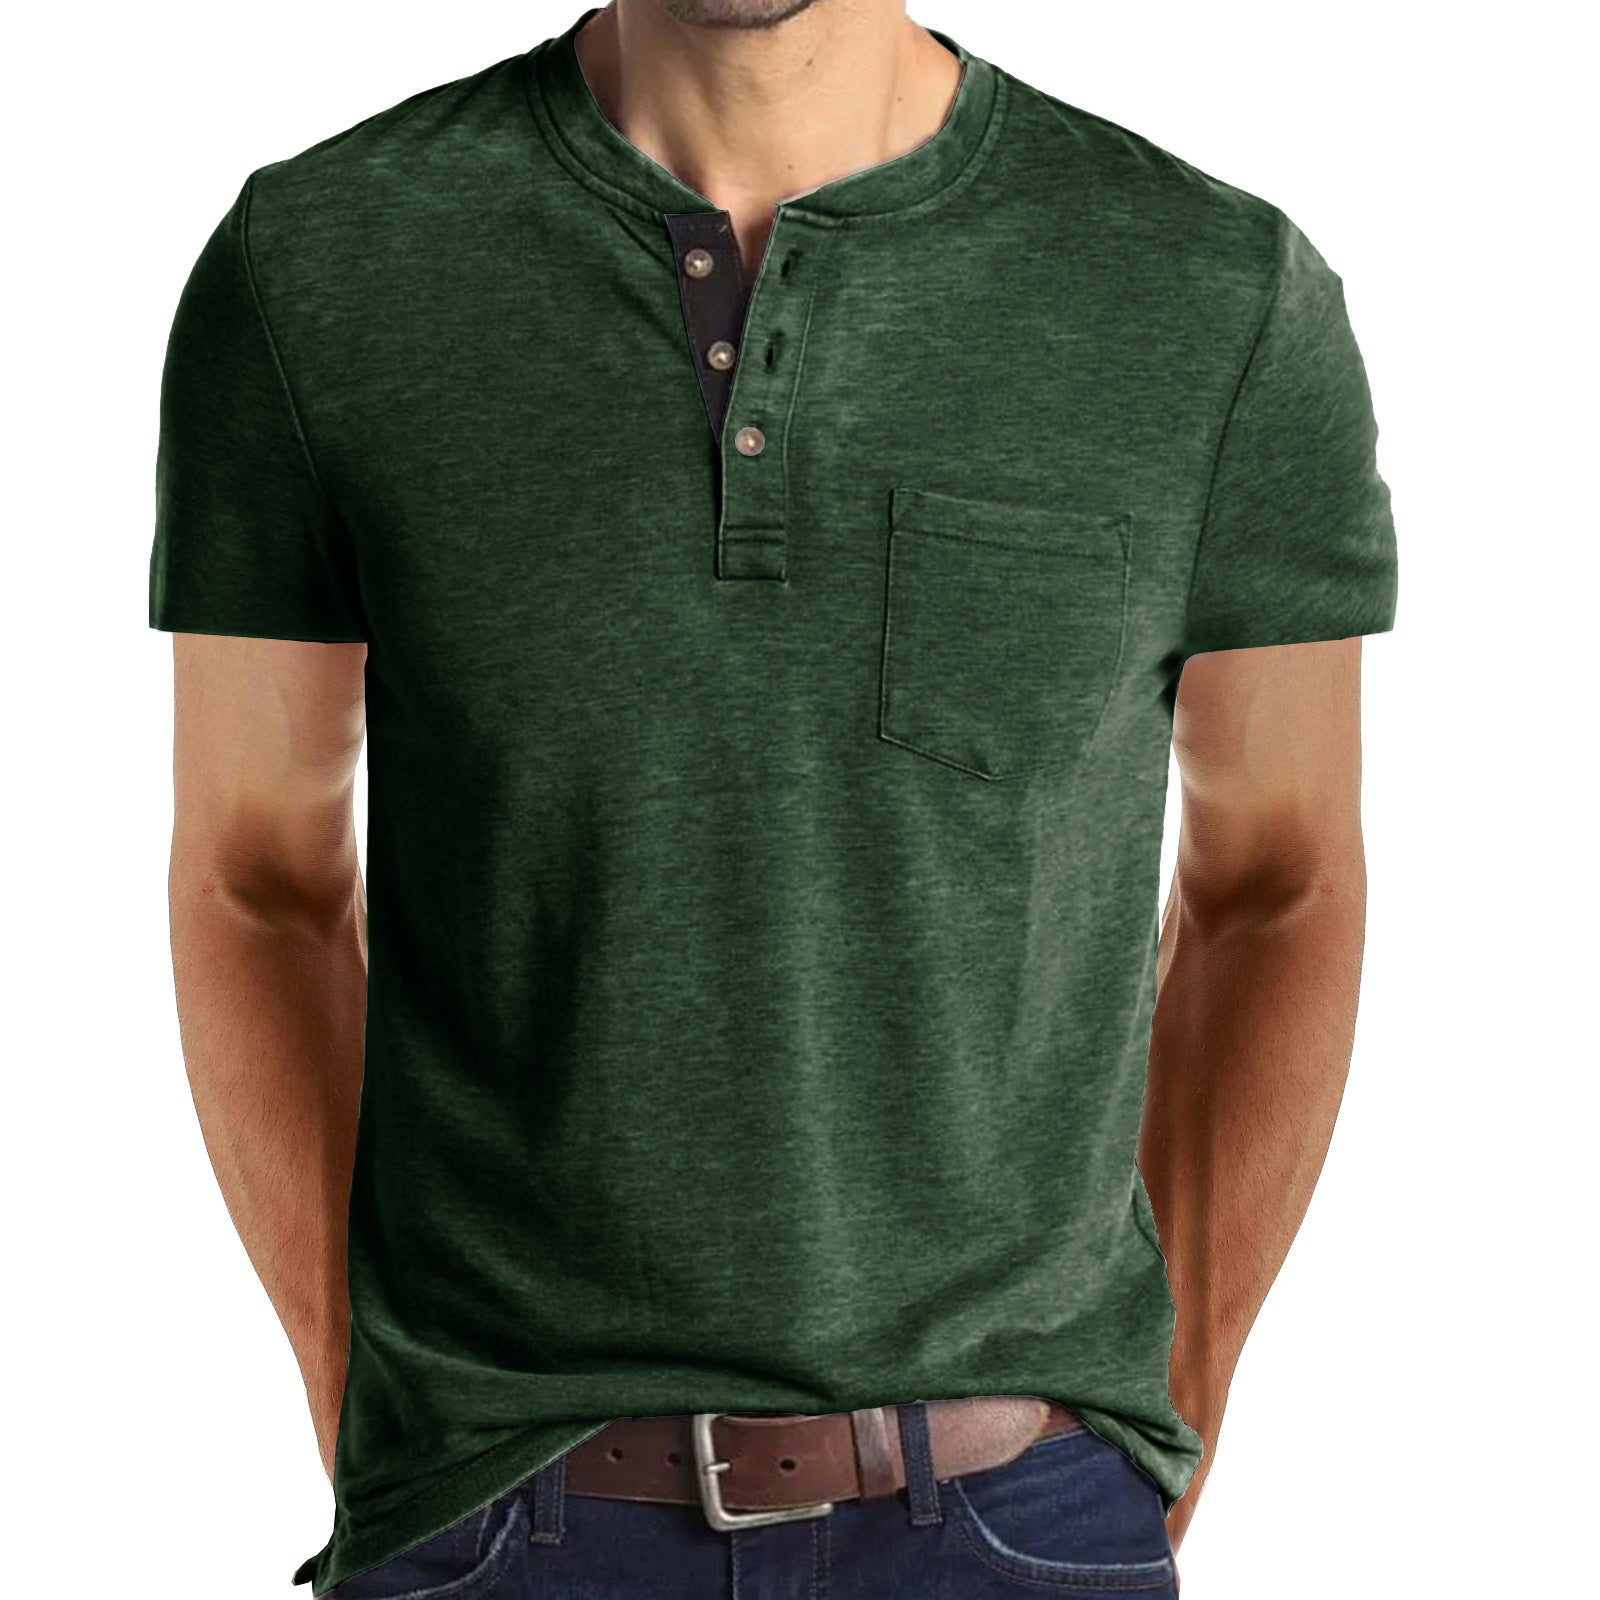 Casual Summer Short Sleeves Men T Shirts-Shirts-Green-S-Free Shipping at meselling99